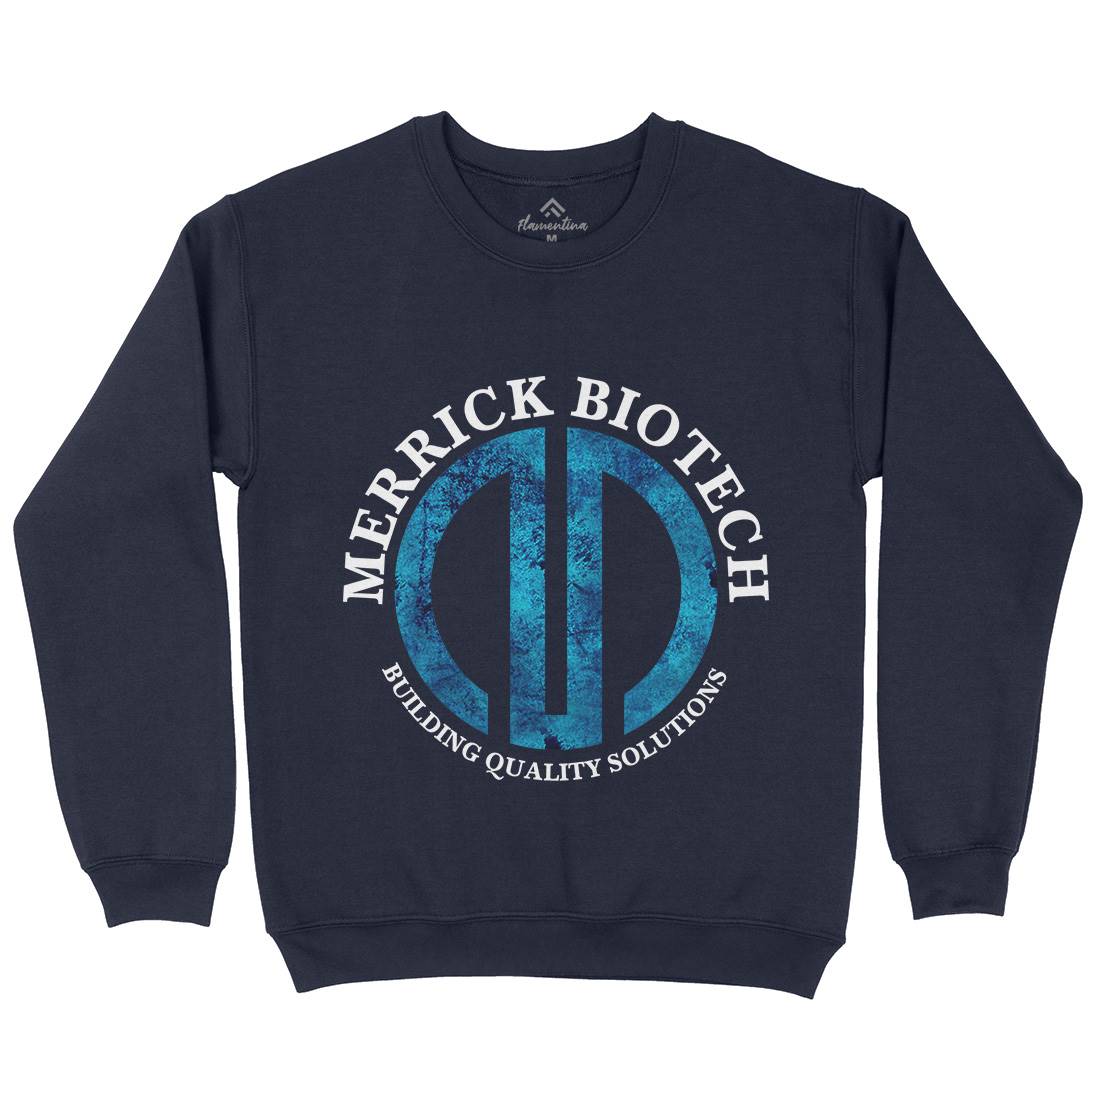 Merrick Biotech Mens Crew Neck Sweatshirt Space D393